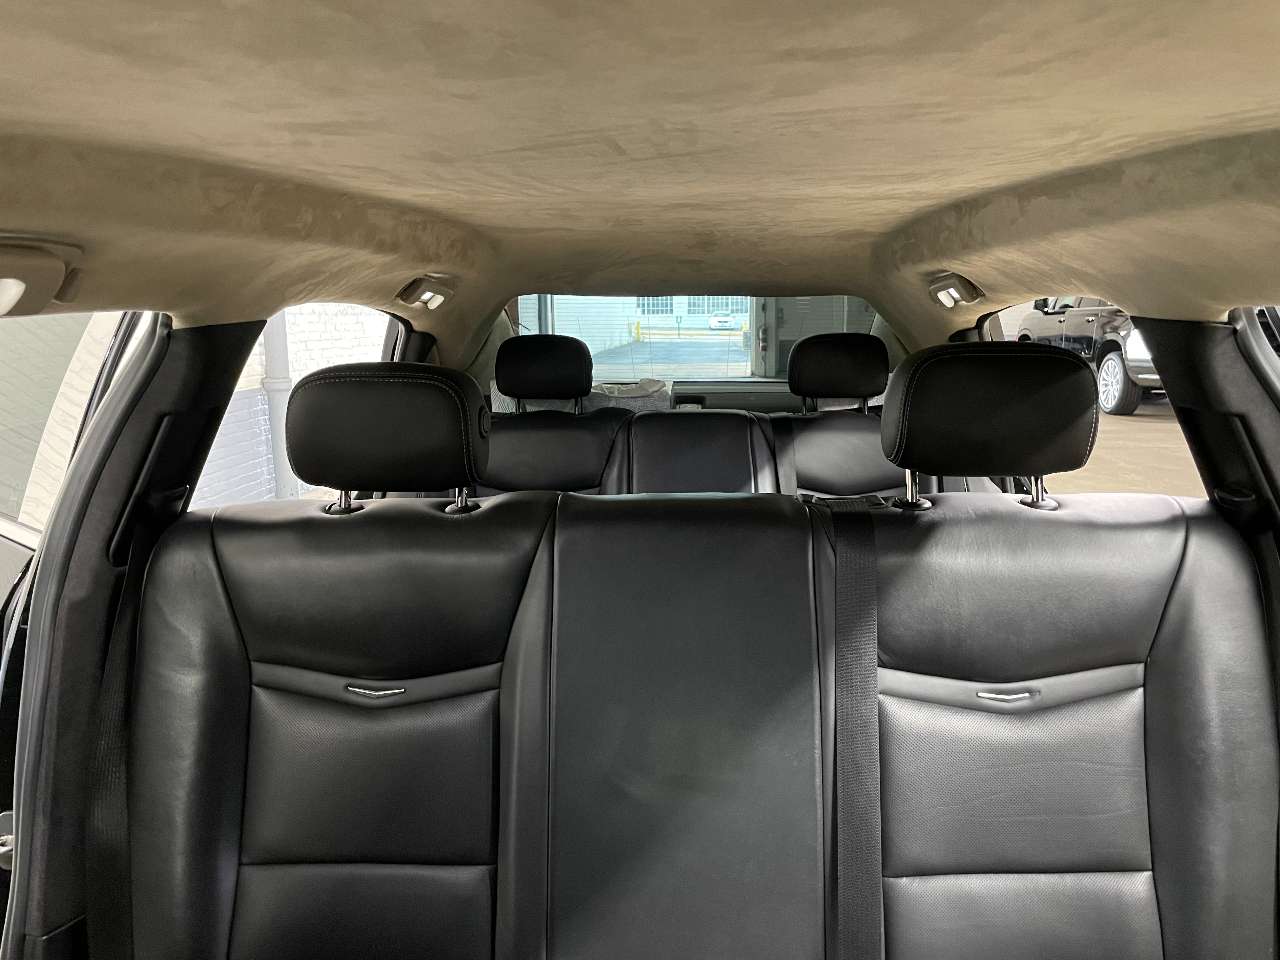 2018 Cadillac S S 52   6 Door Limousine 1661510545567